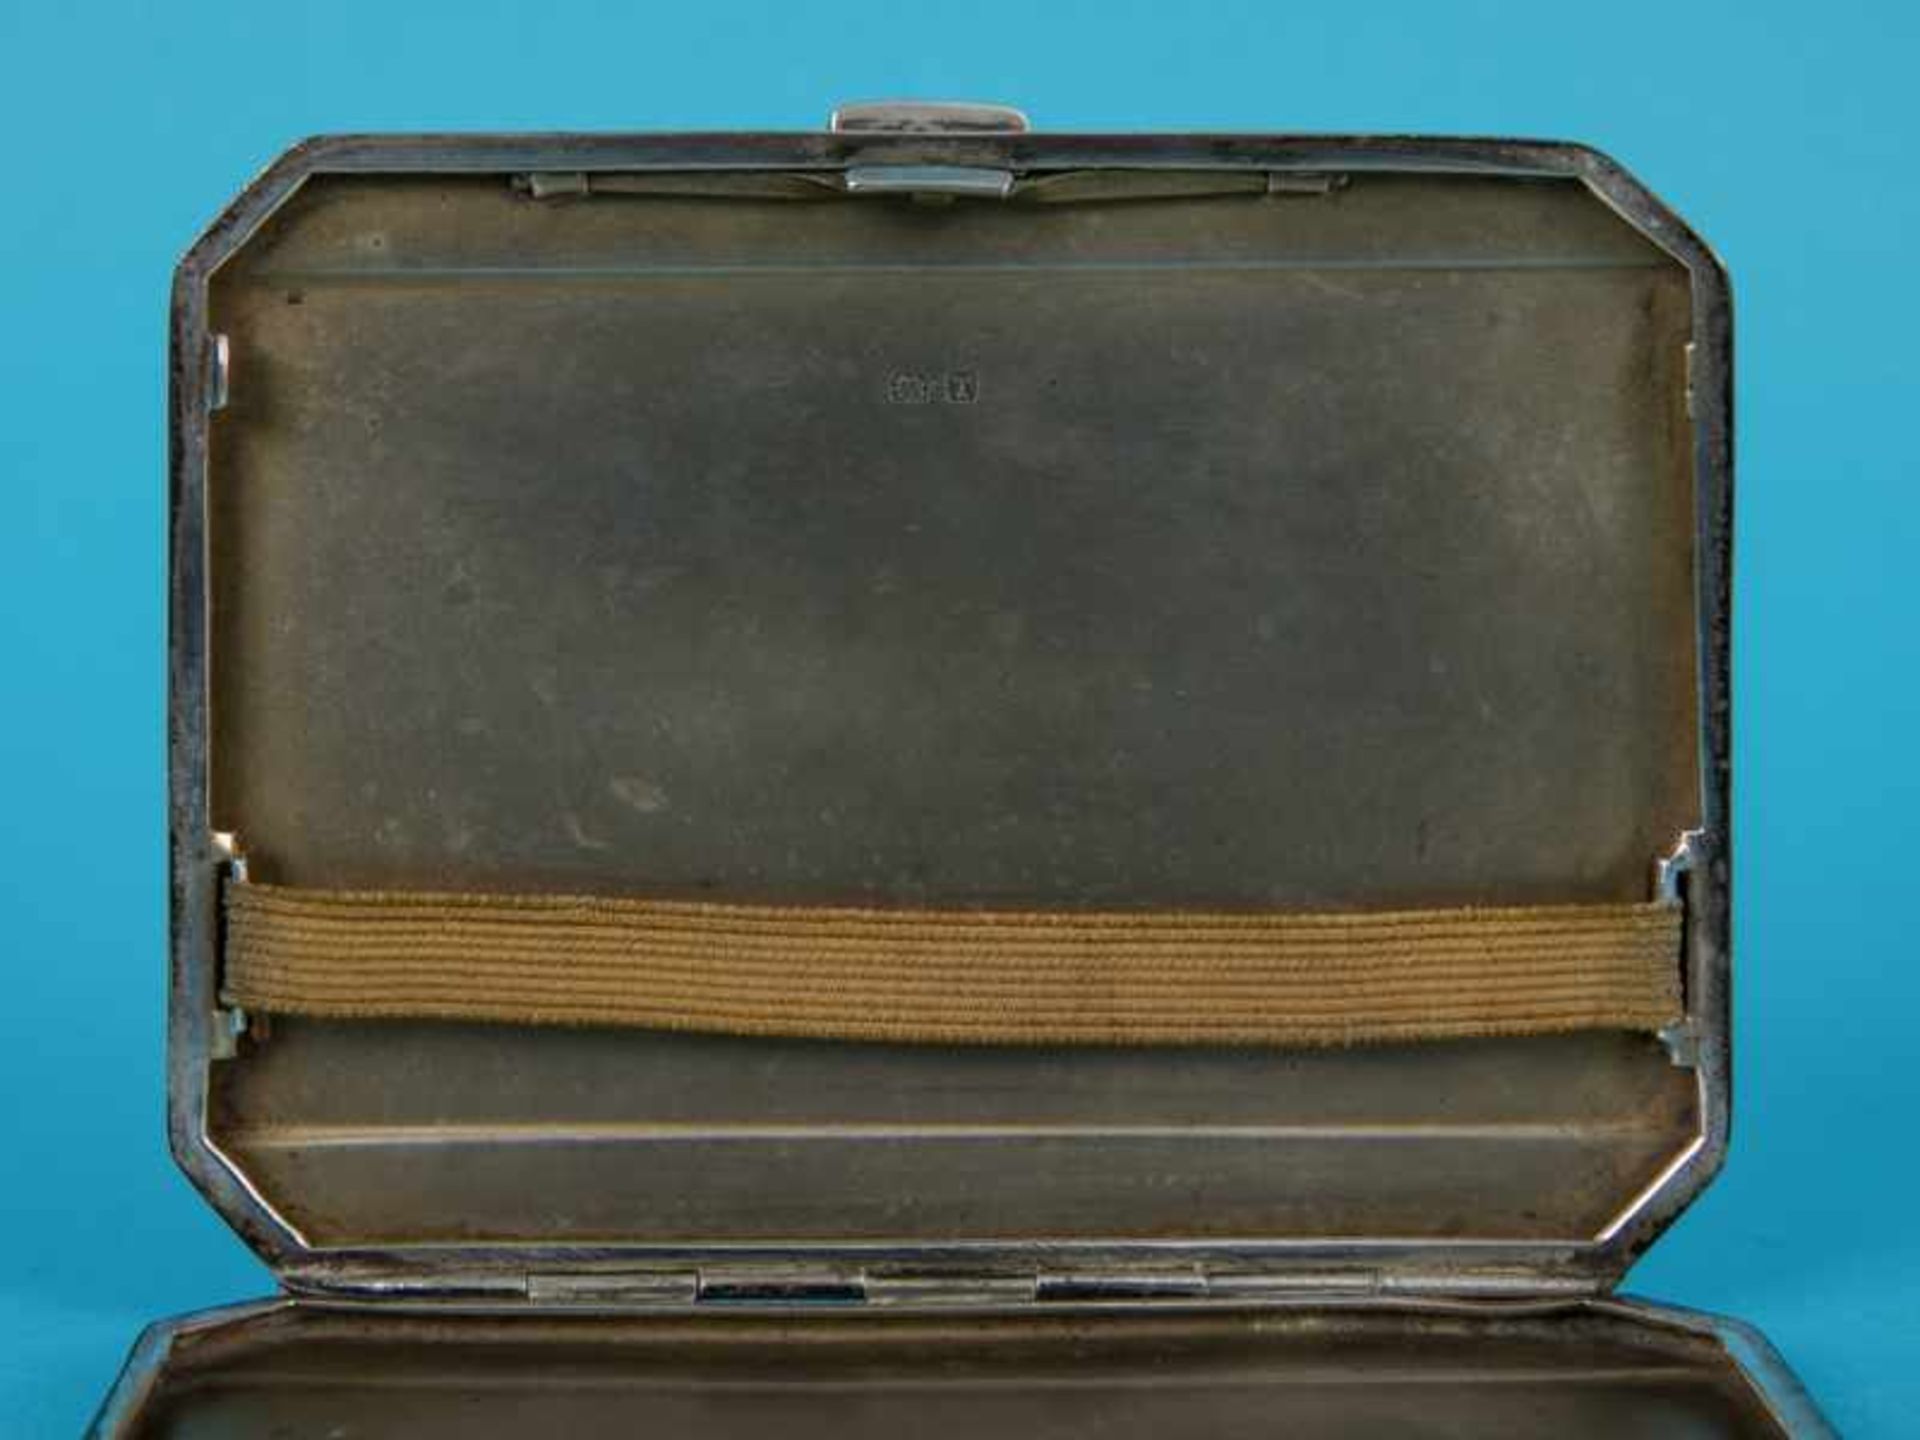 Zigaretten-Etui, Joseph Gloster Ltd, Birmingham, 1943. 925/-Silber, ca. 150 g; 8-eckig mit - Bild 5 aus 7